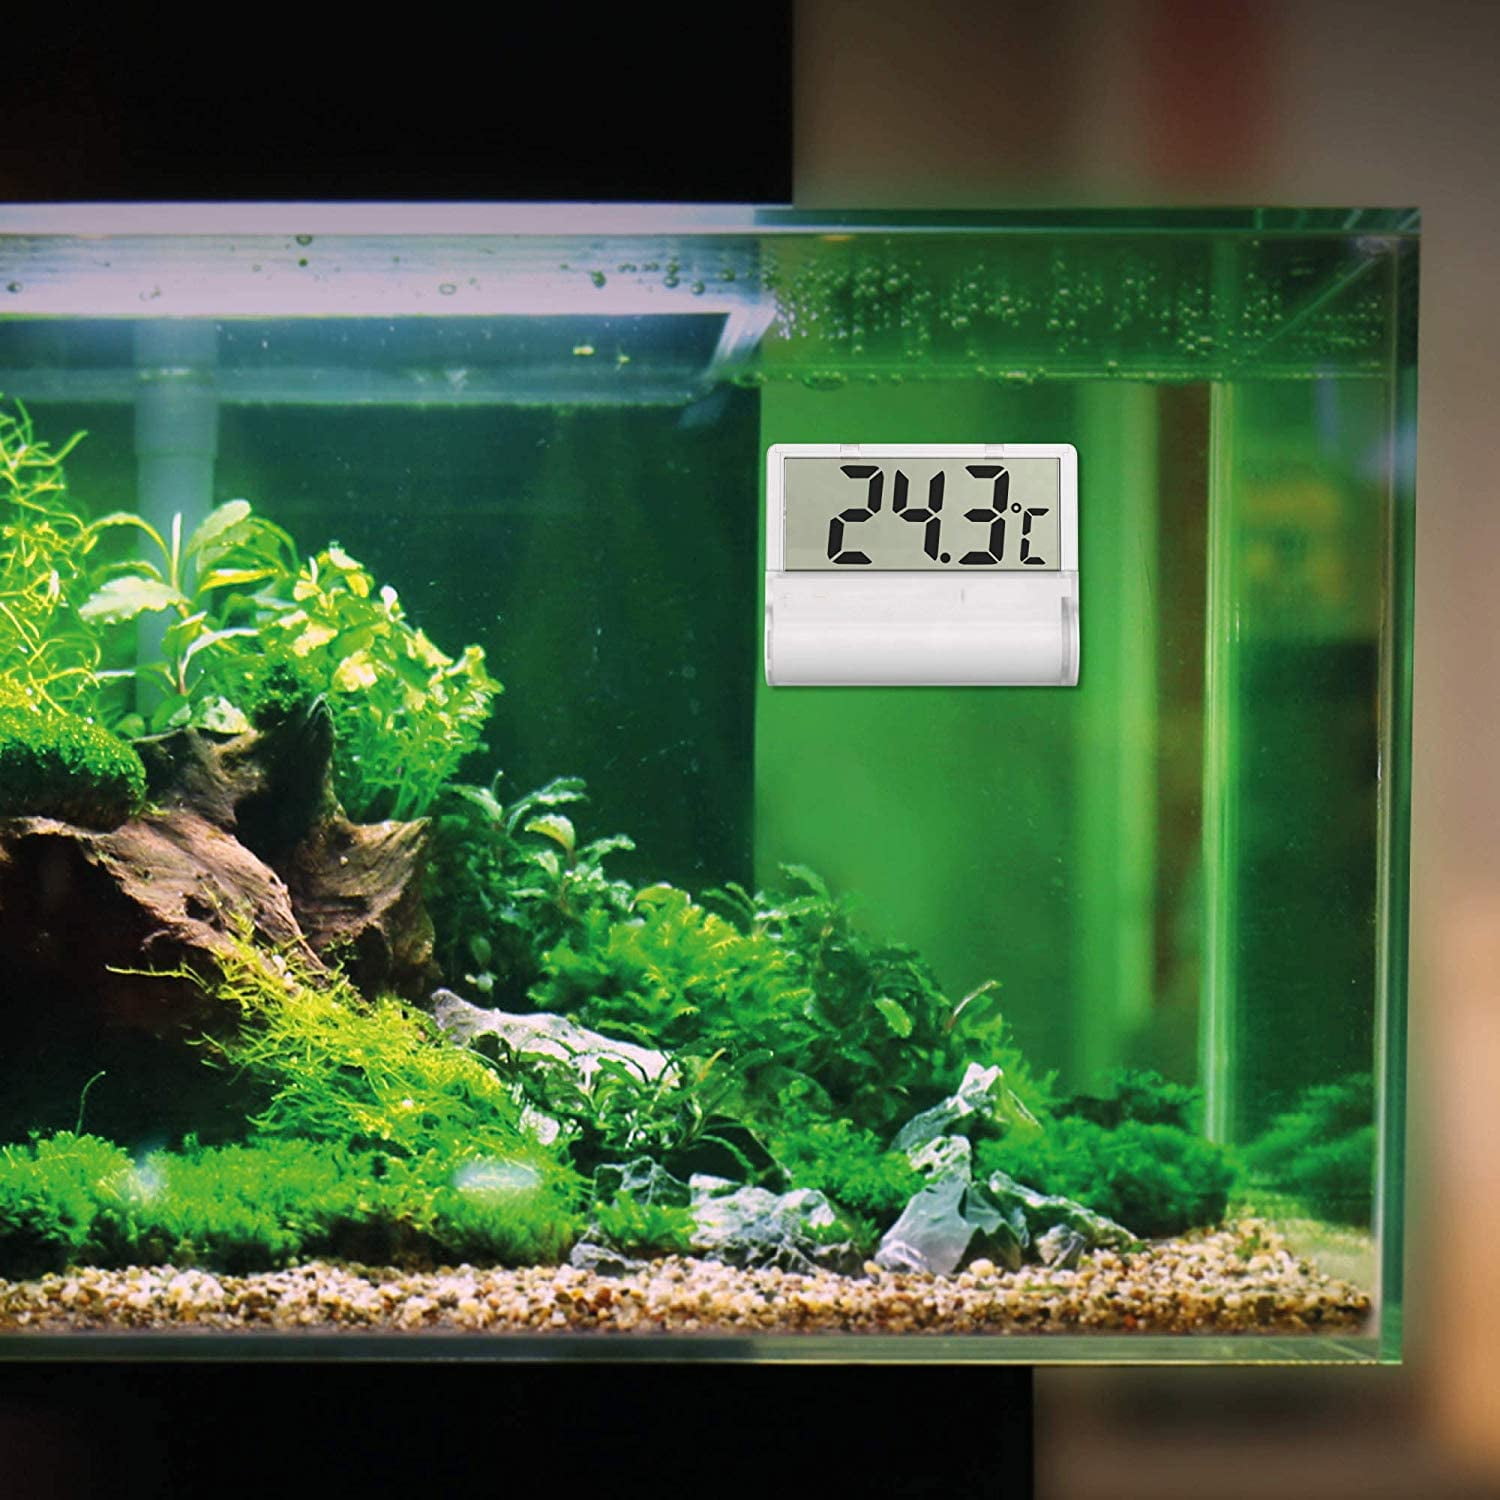 JLENOVEG Digital Aquarium Thermometer Room Thermometer Mini LCD Digital Aquarium Thermometer for Fish Tank Aquarium Vivarium Amphibian Reptile Terrariums Temperature 